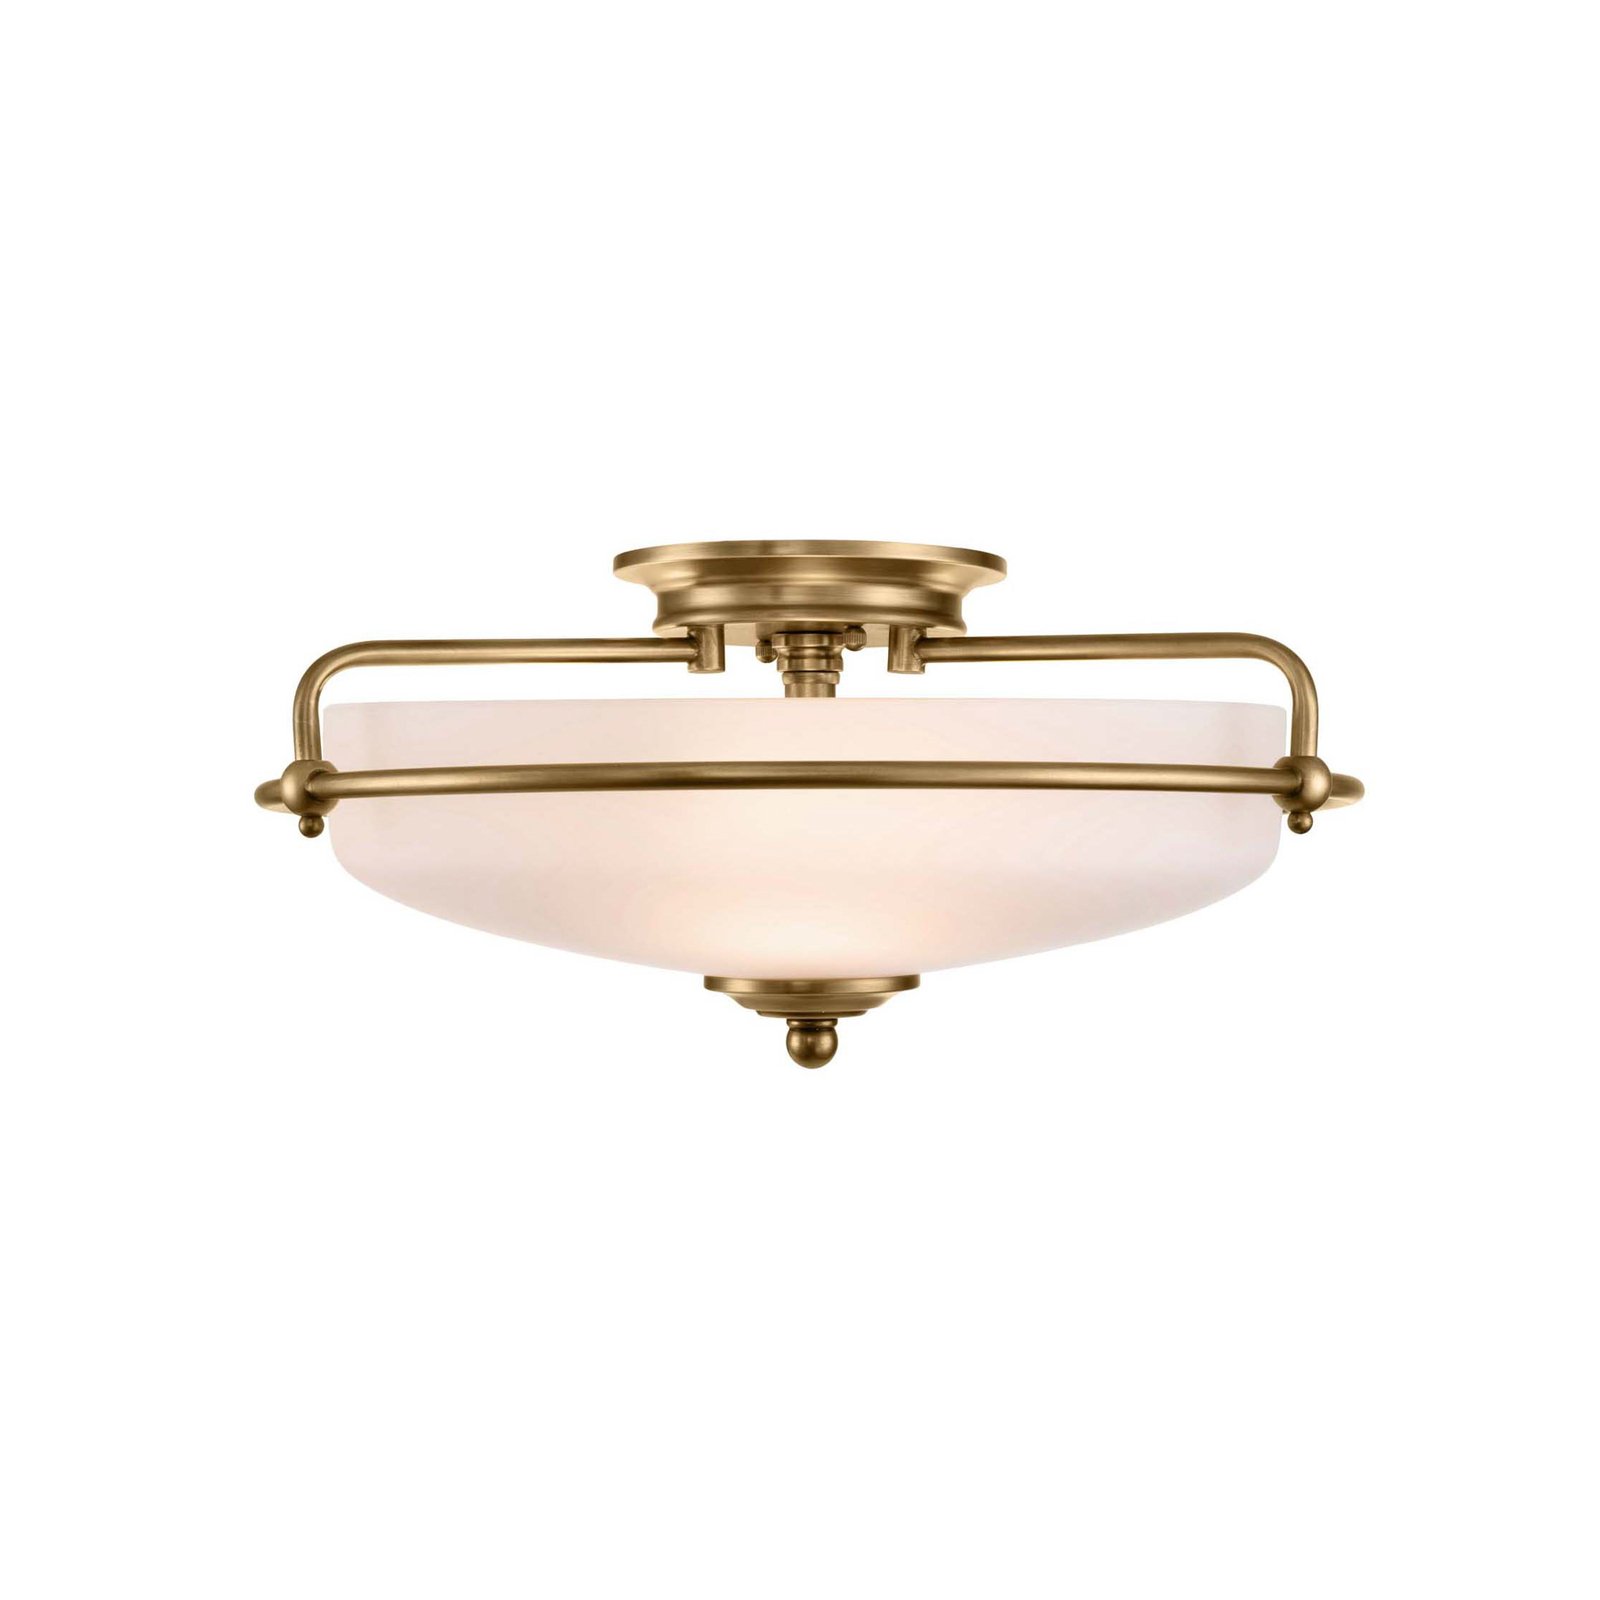 Griffin F ceiling light, Ø 42 cm, opal glass shade, brass